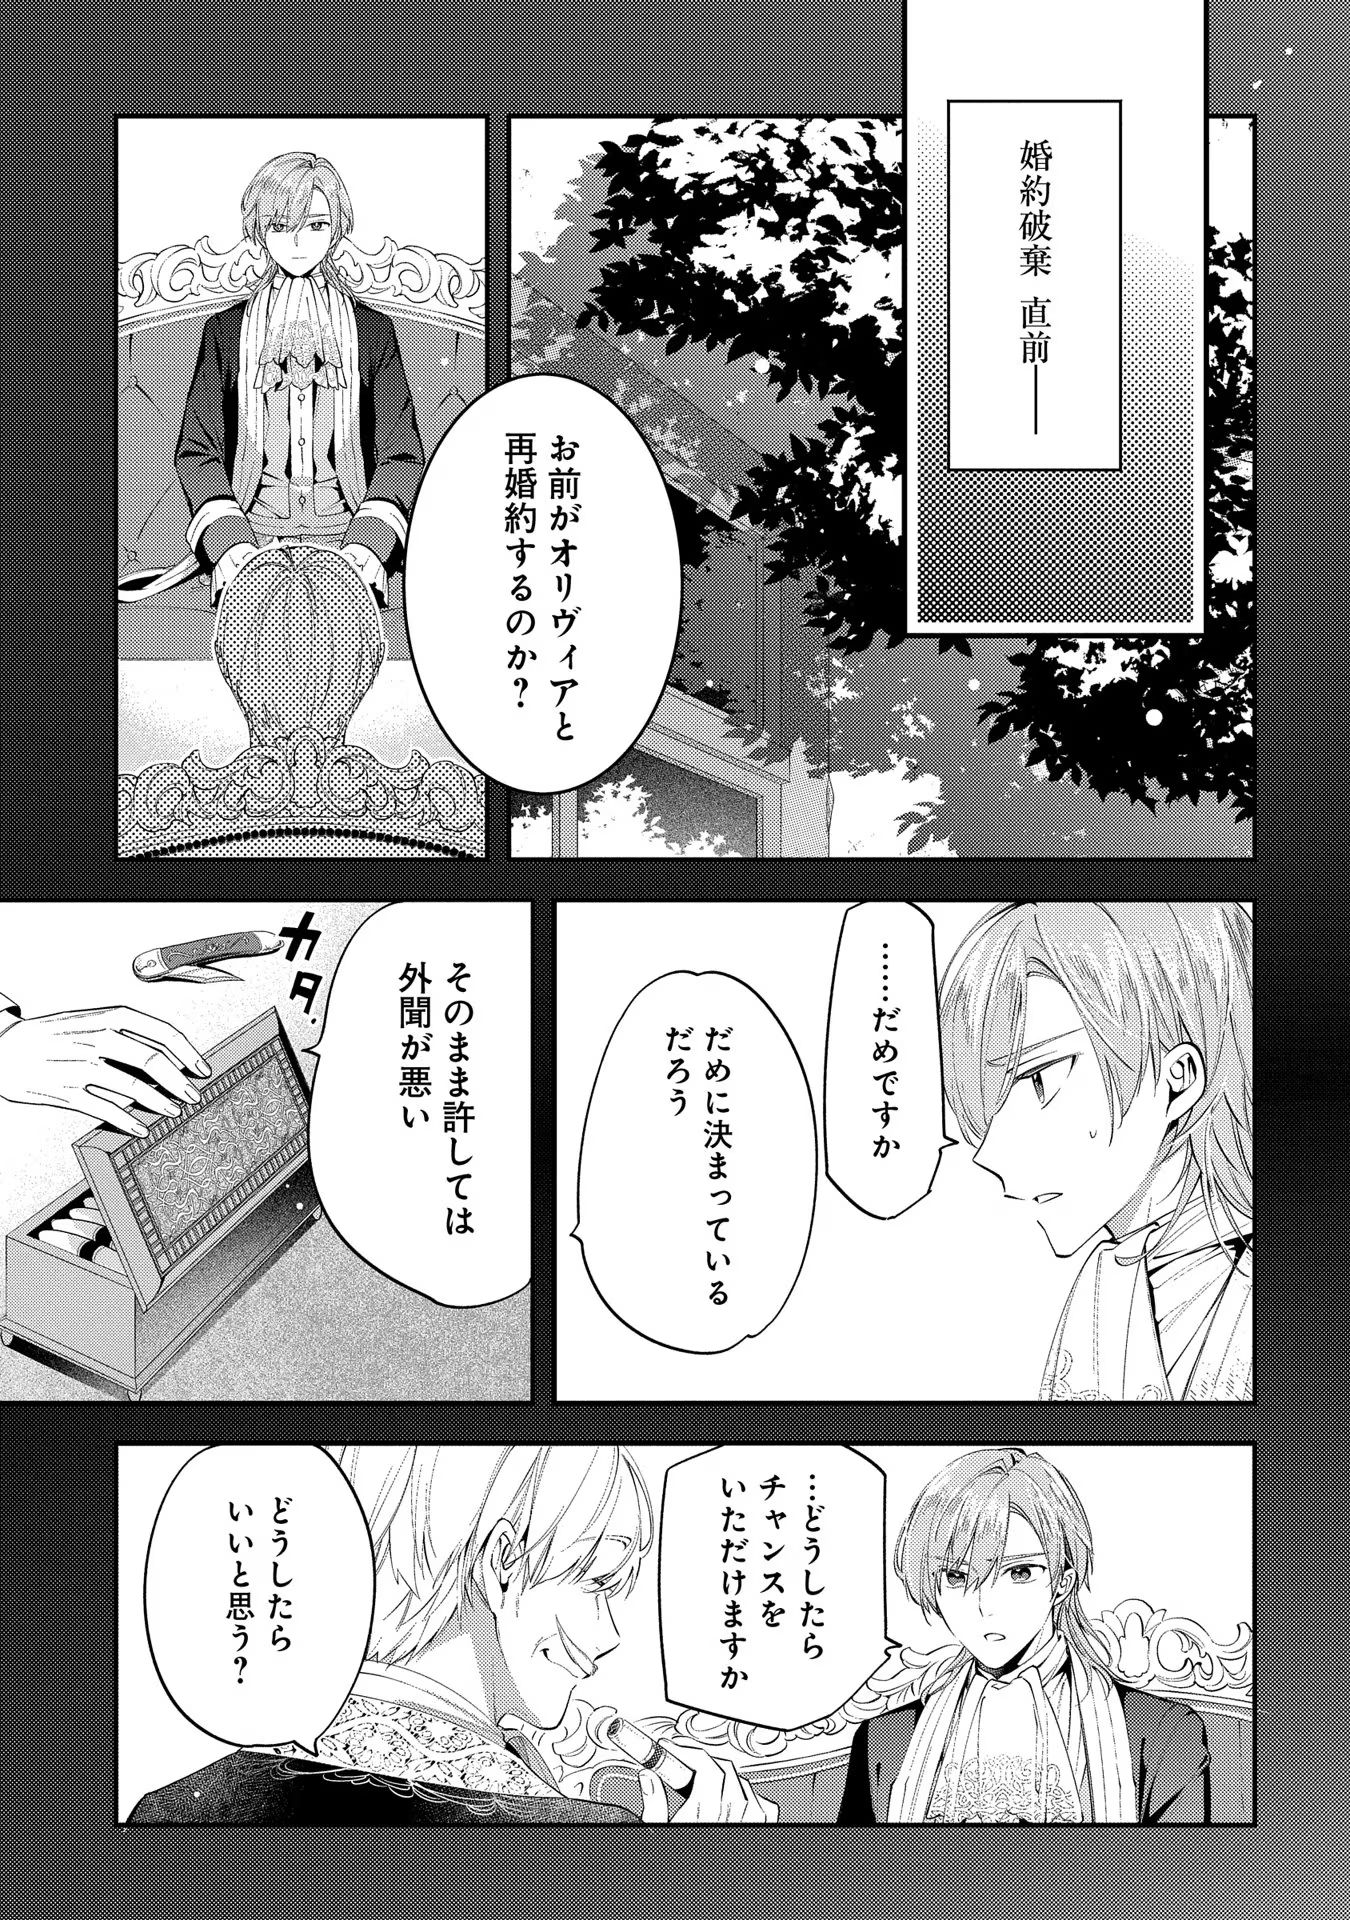 Outaishi ni Konyaku Hakisareta no de, Mou Baka no Furi wa Yameyou to Omoimasu - Chapter 9 - Page 25